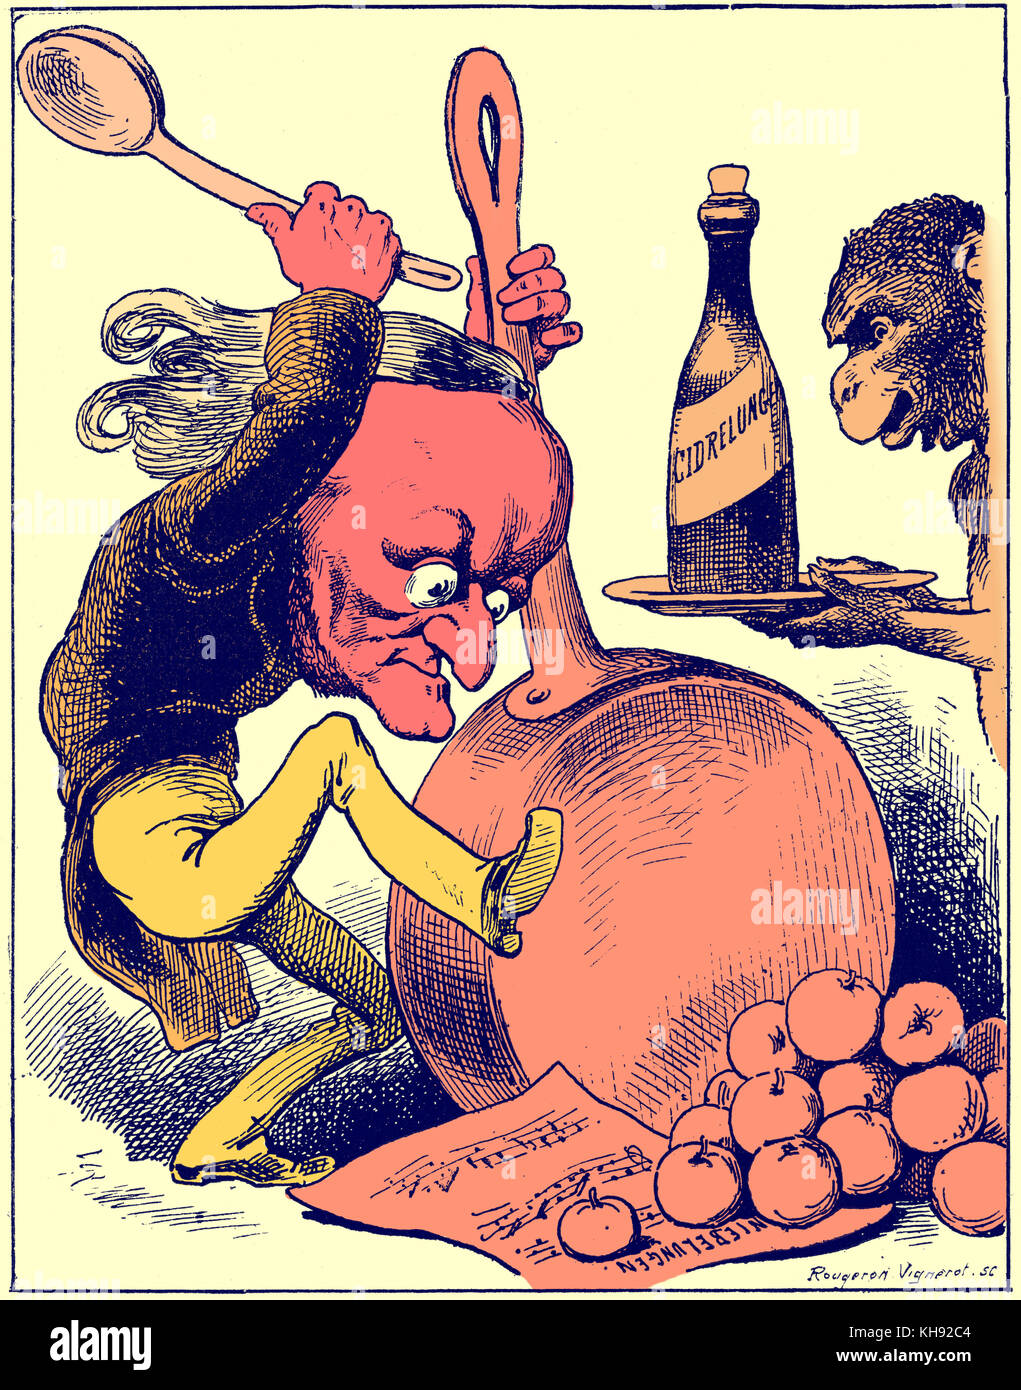 Wagner la Tetralogue - Caricatura de André Gill grabado por Rougeron Vignerot. Un chimpancé Wager presenta una botella con 'Cidrelungen" escrito en la etiqueta (referencia a Nieleungen) ciclo de óperas. Se sugiere que él ha sido capaz de superar el gusto francés de "l'Art du cri cri' y premio a sí mismo todas las manzanas de Francia. Foto de stock